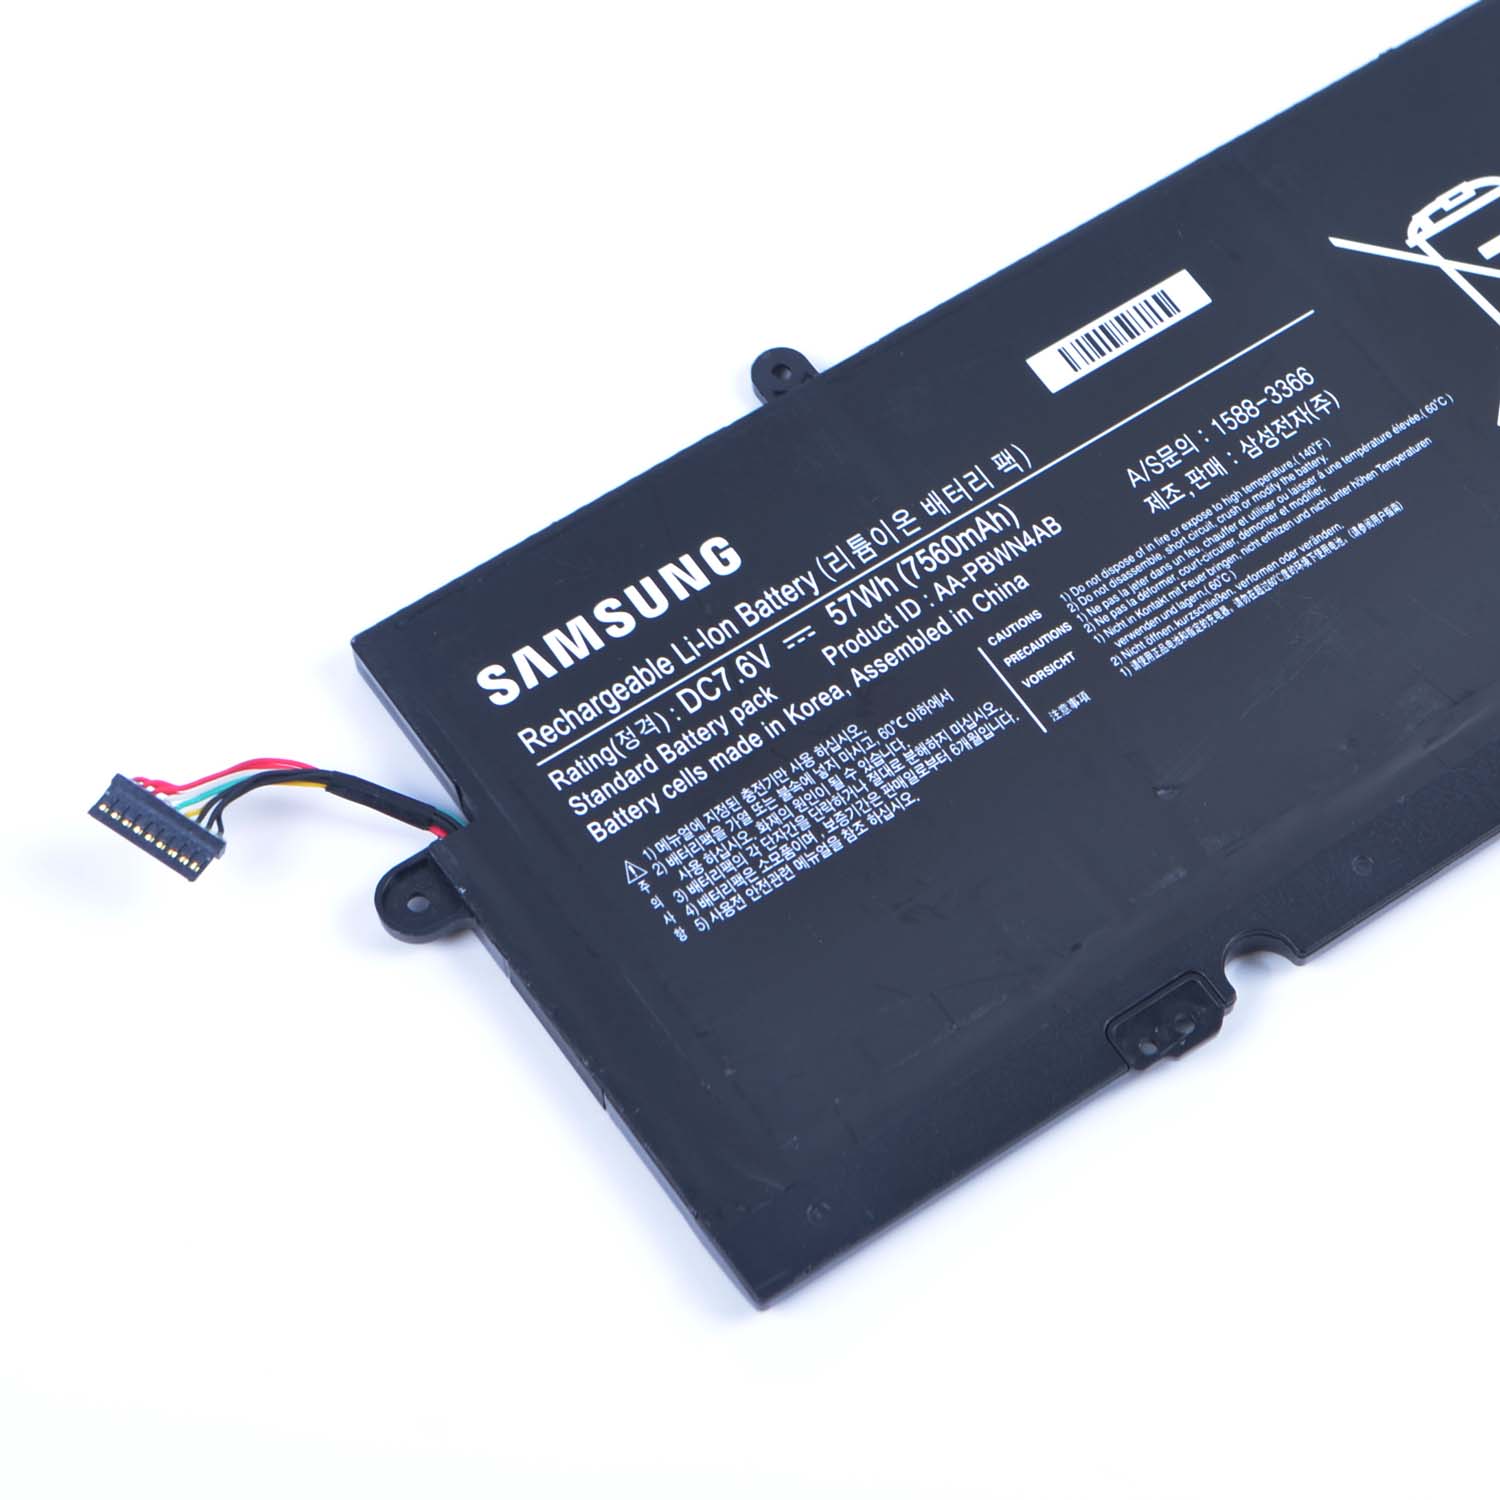 Samsung 530U4E batería